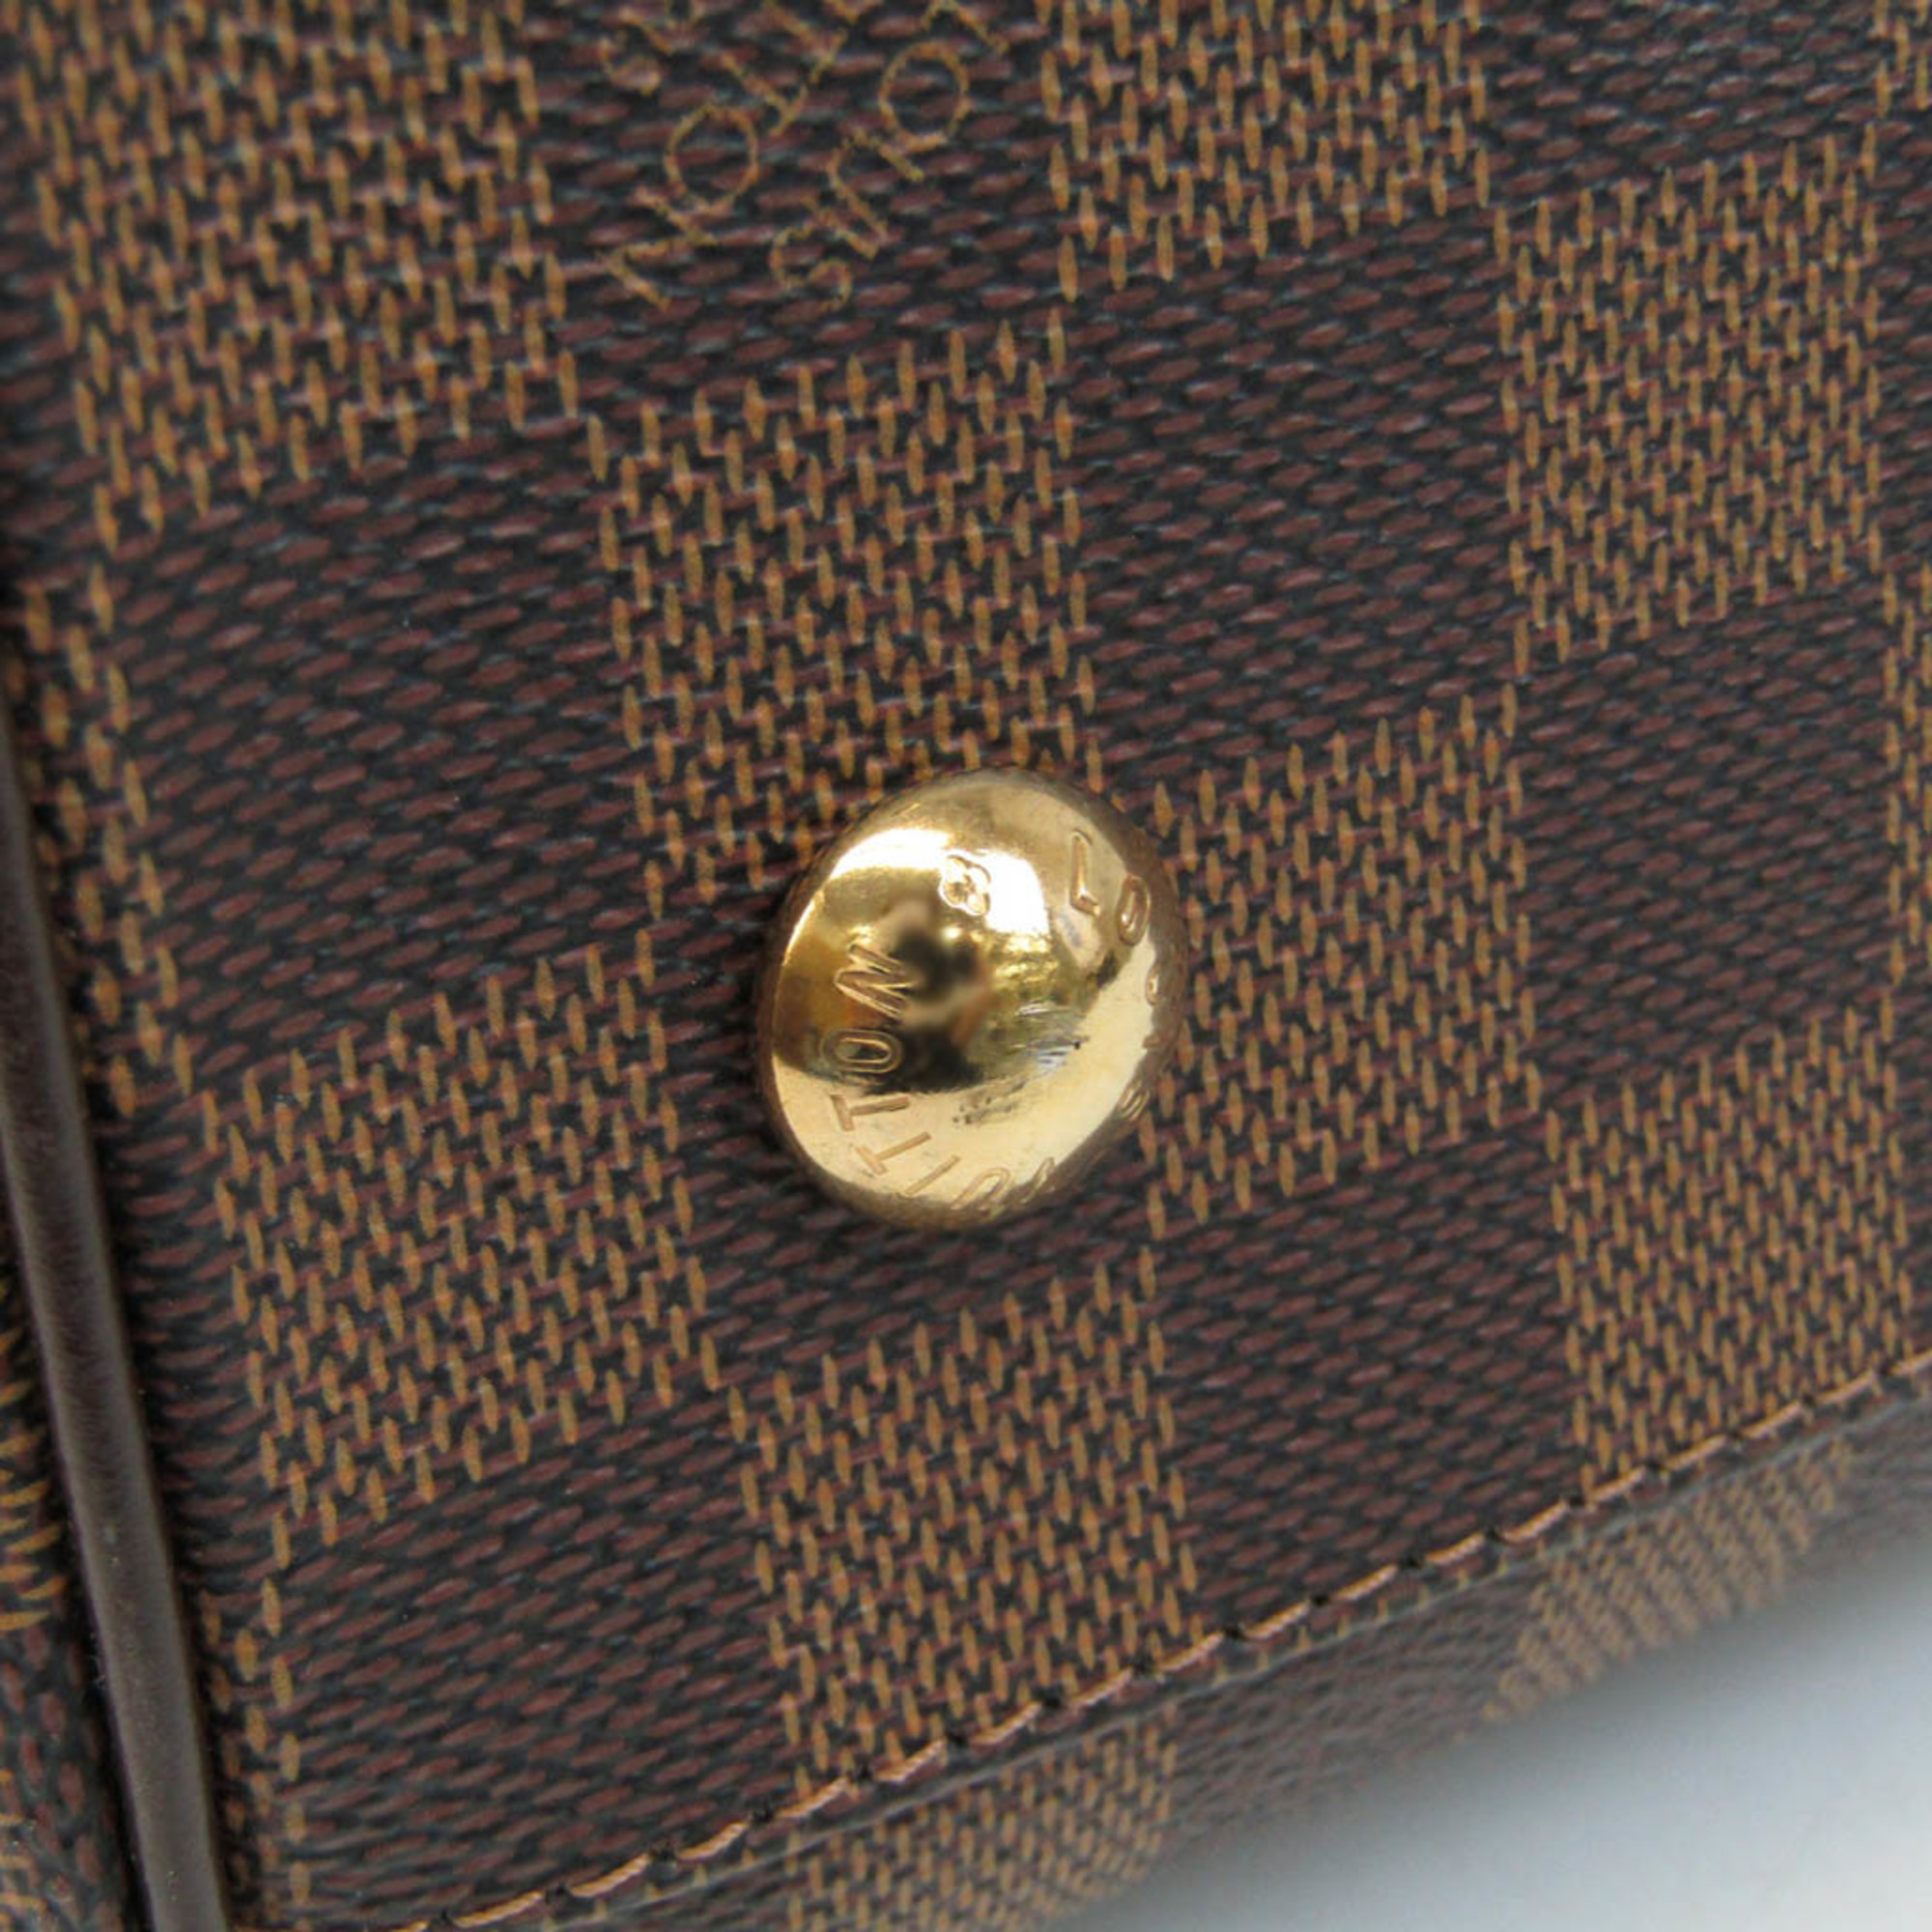 ルイ・ヴィトン(Louis Vuitton) ダミエ トレヴィGM N51998 レディース ハンドバッグ,ショルダーバッグ エベヌ